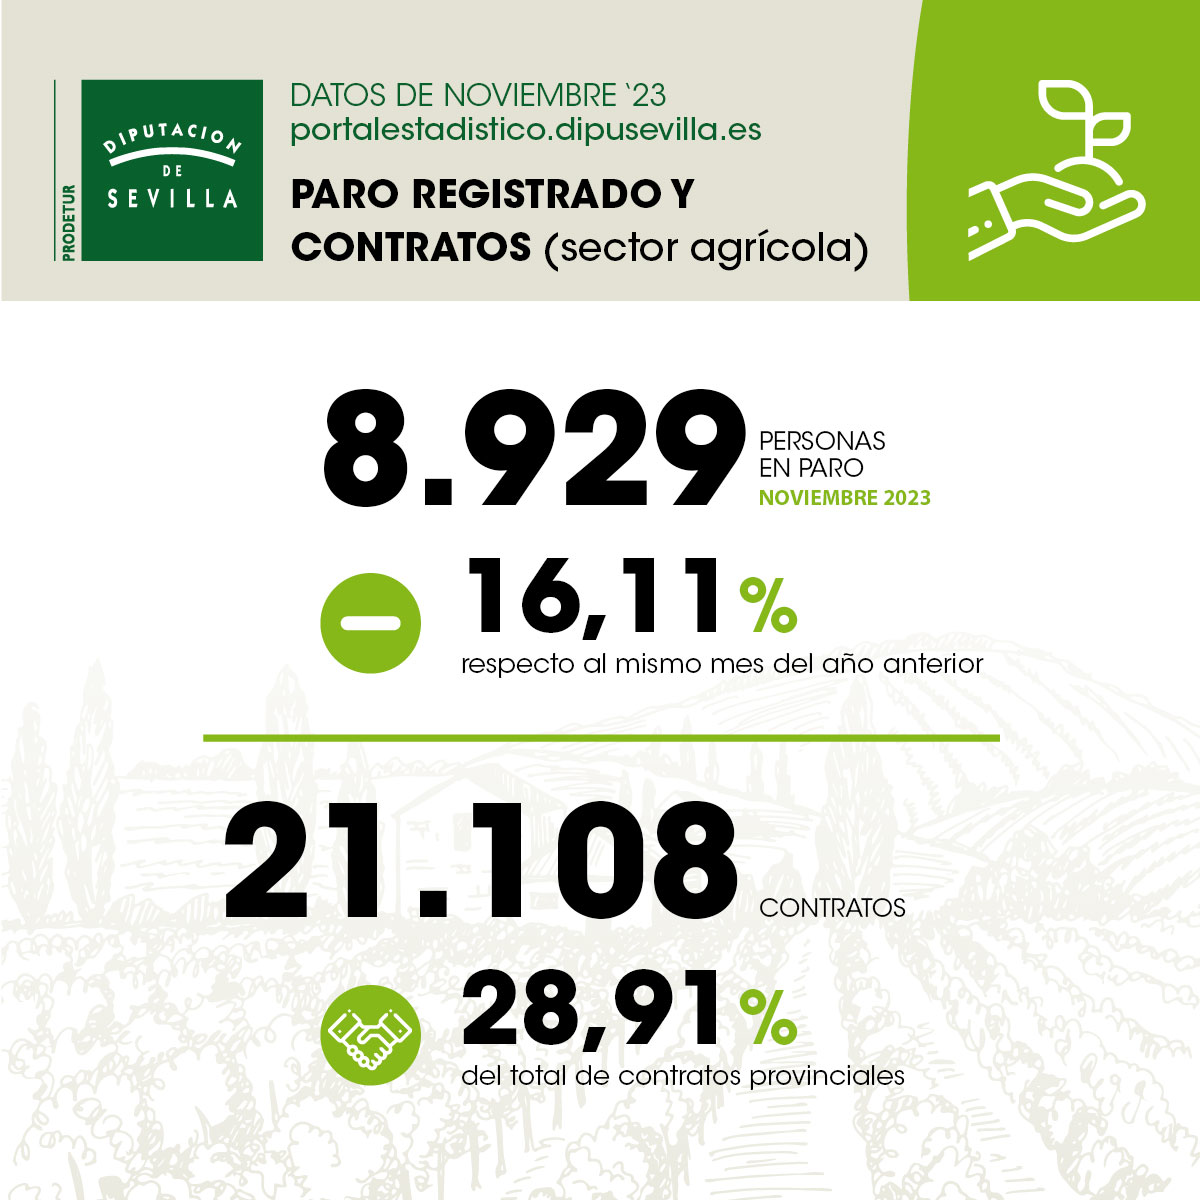 paro-registrado-y-contratos-sector-agricola-noviembre23